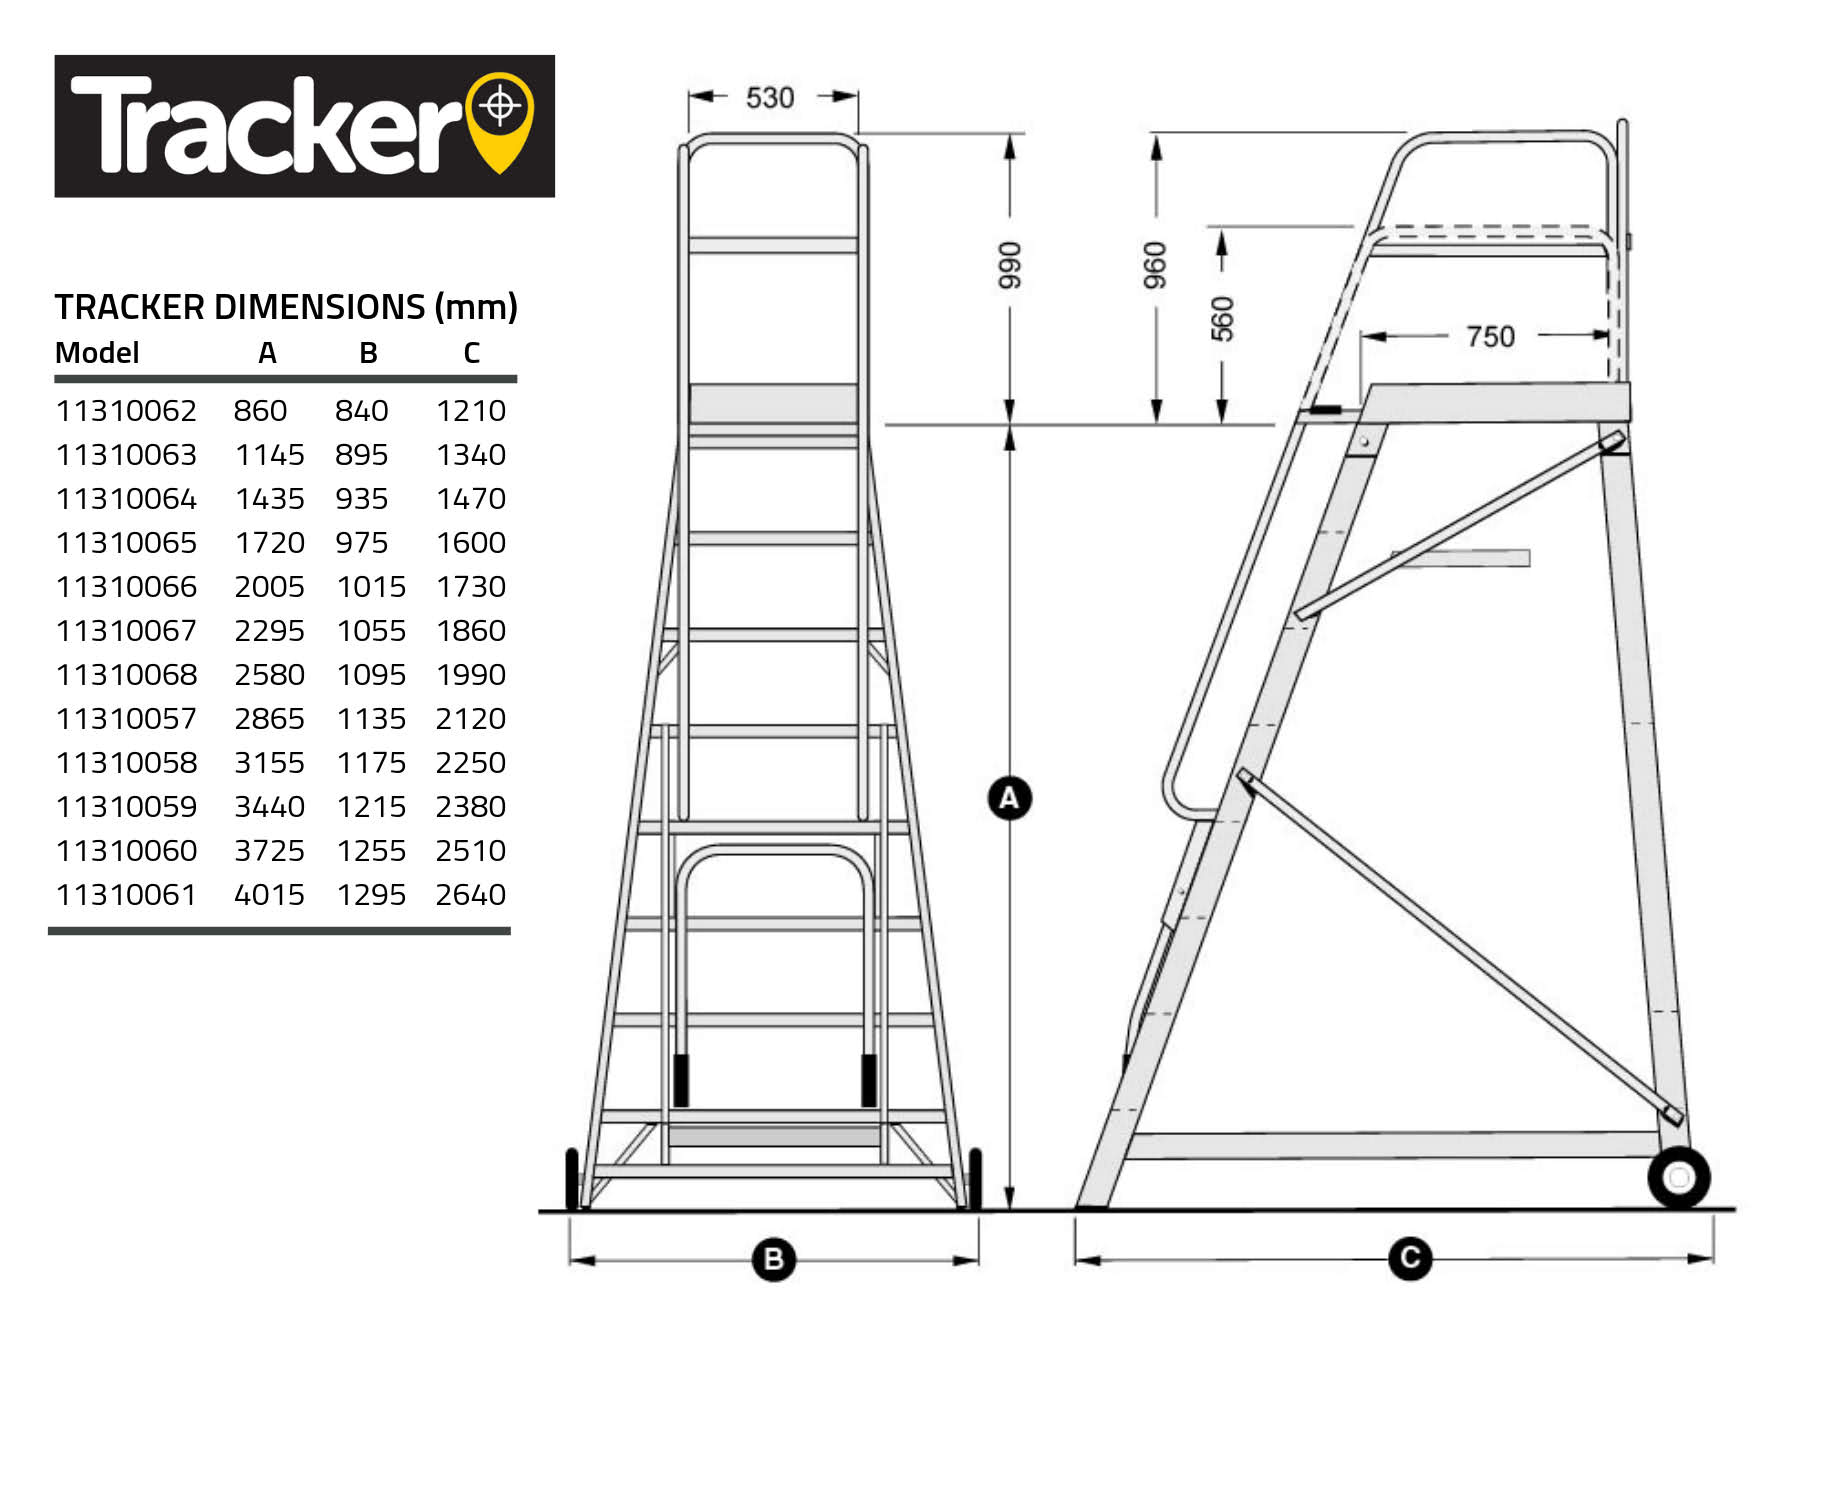 Tracker Mobile Platform Ladder